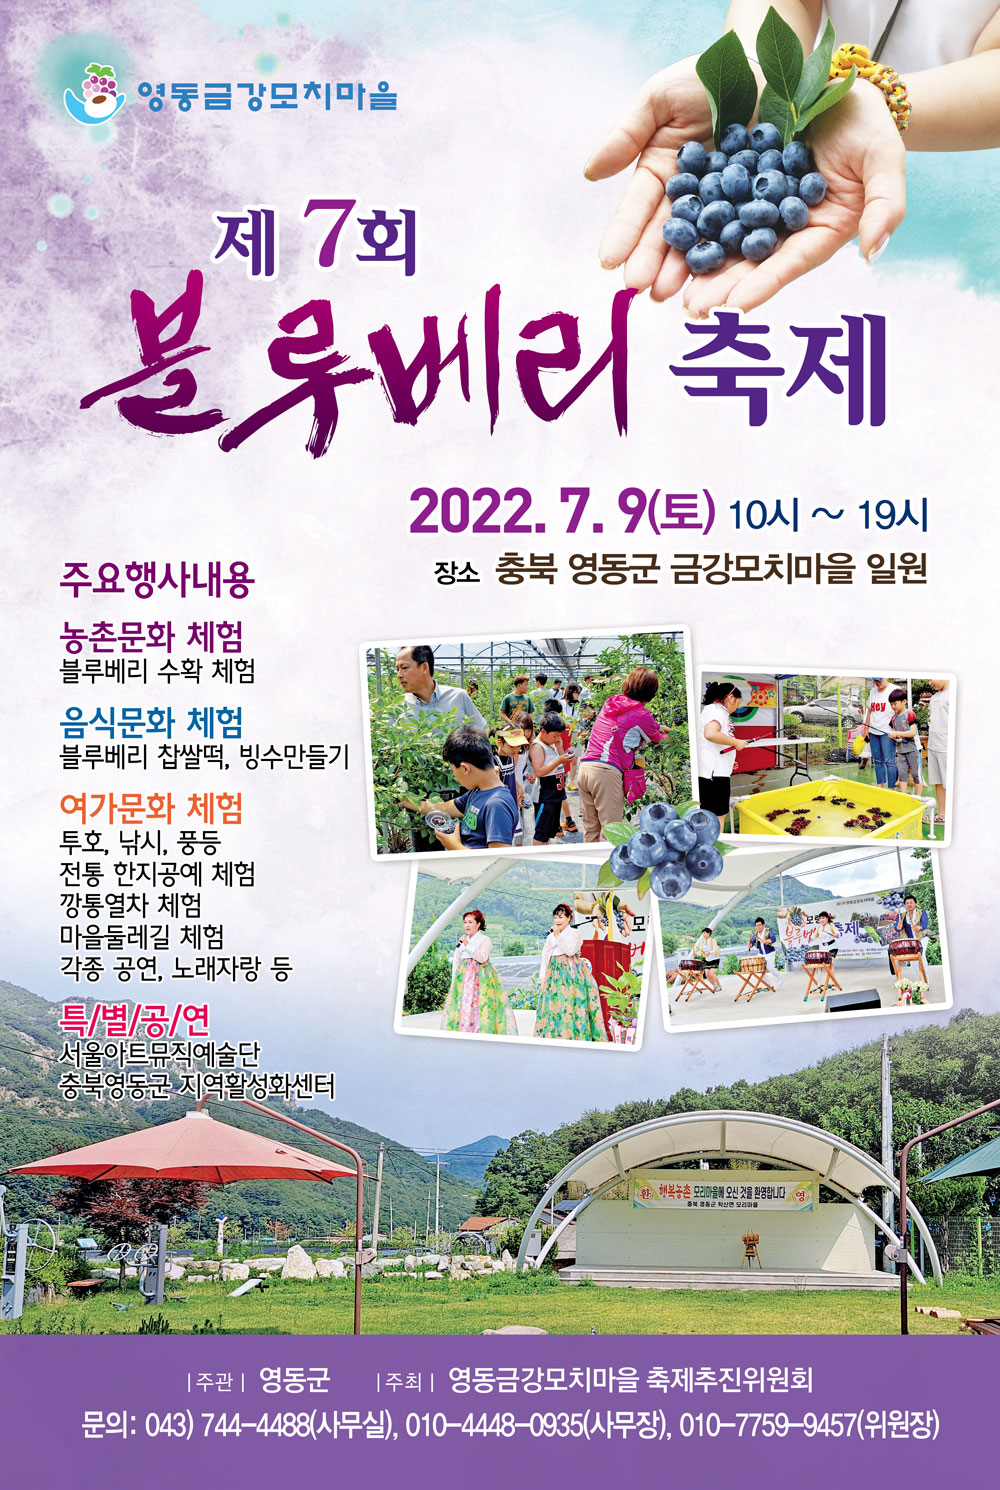 영동 금강모치마을 블루베리 축제 홍보 포스터.